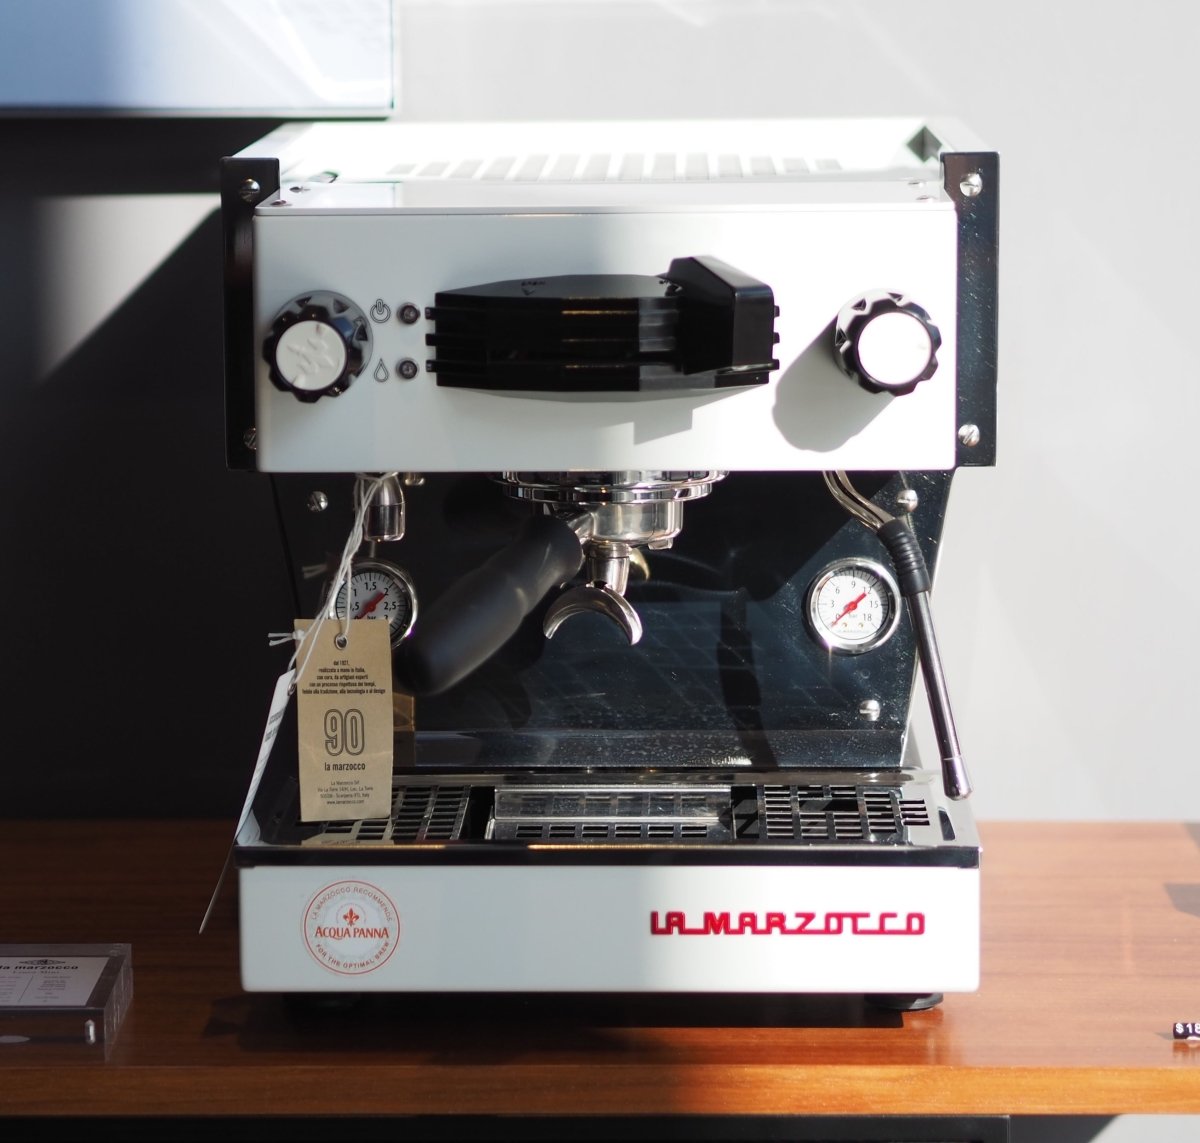 La Marzocco Linea Mini Espresso Machine